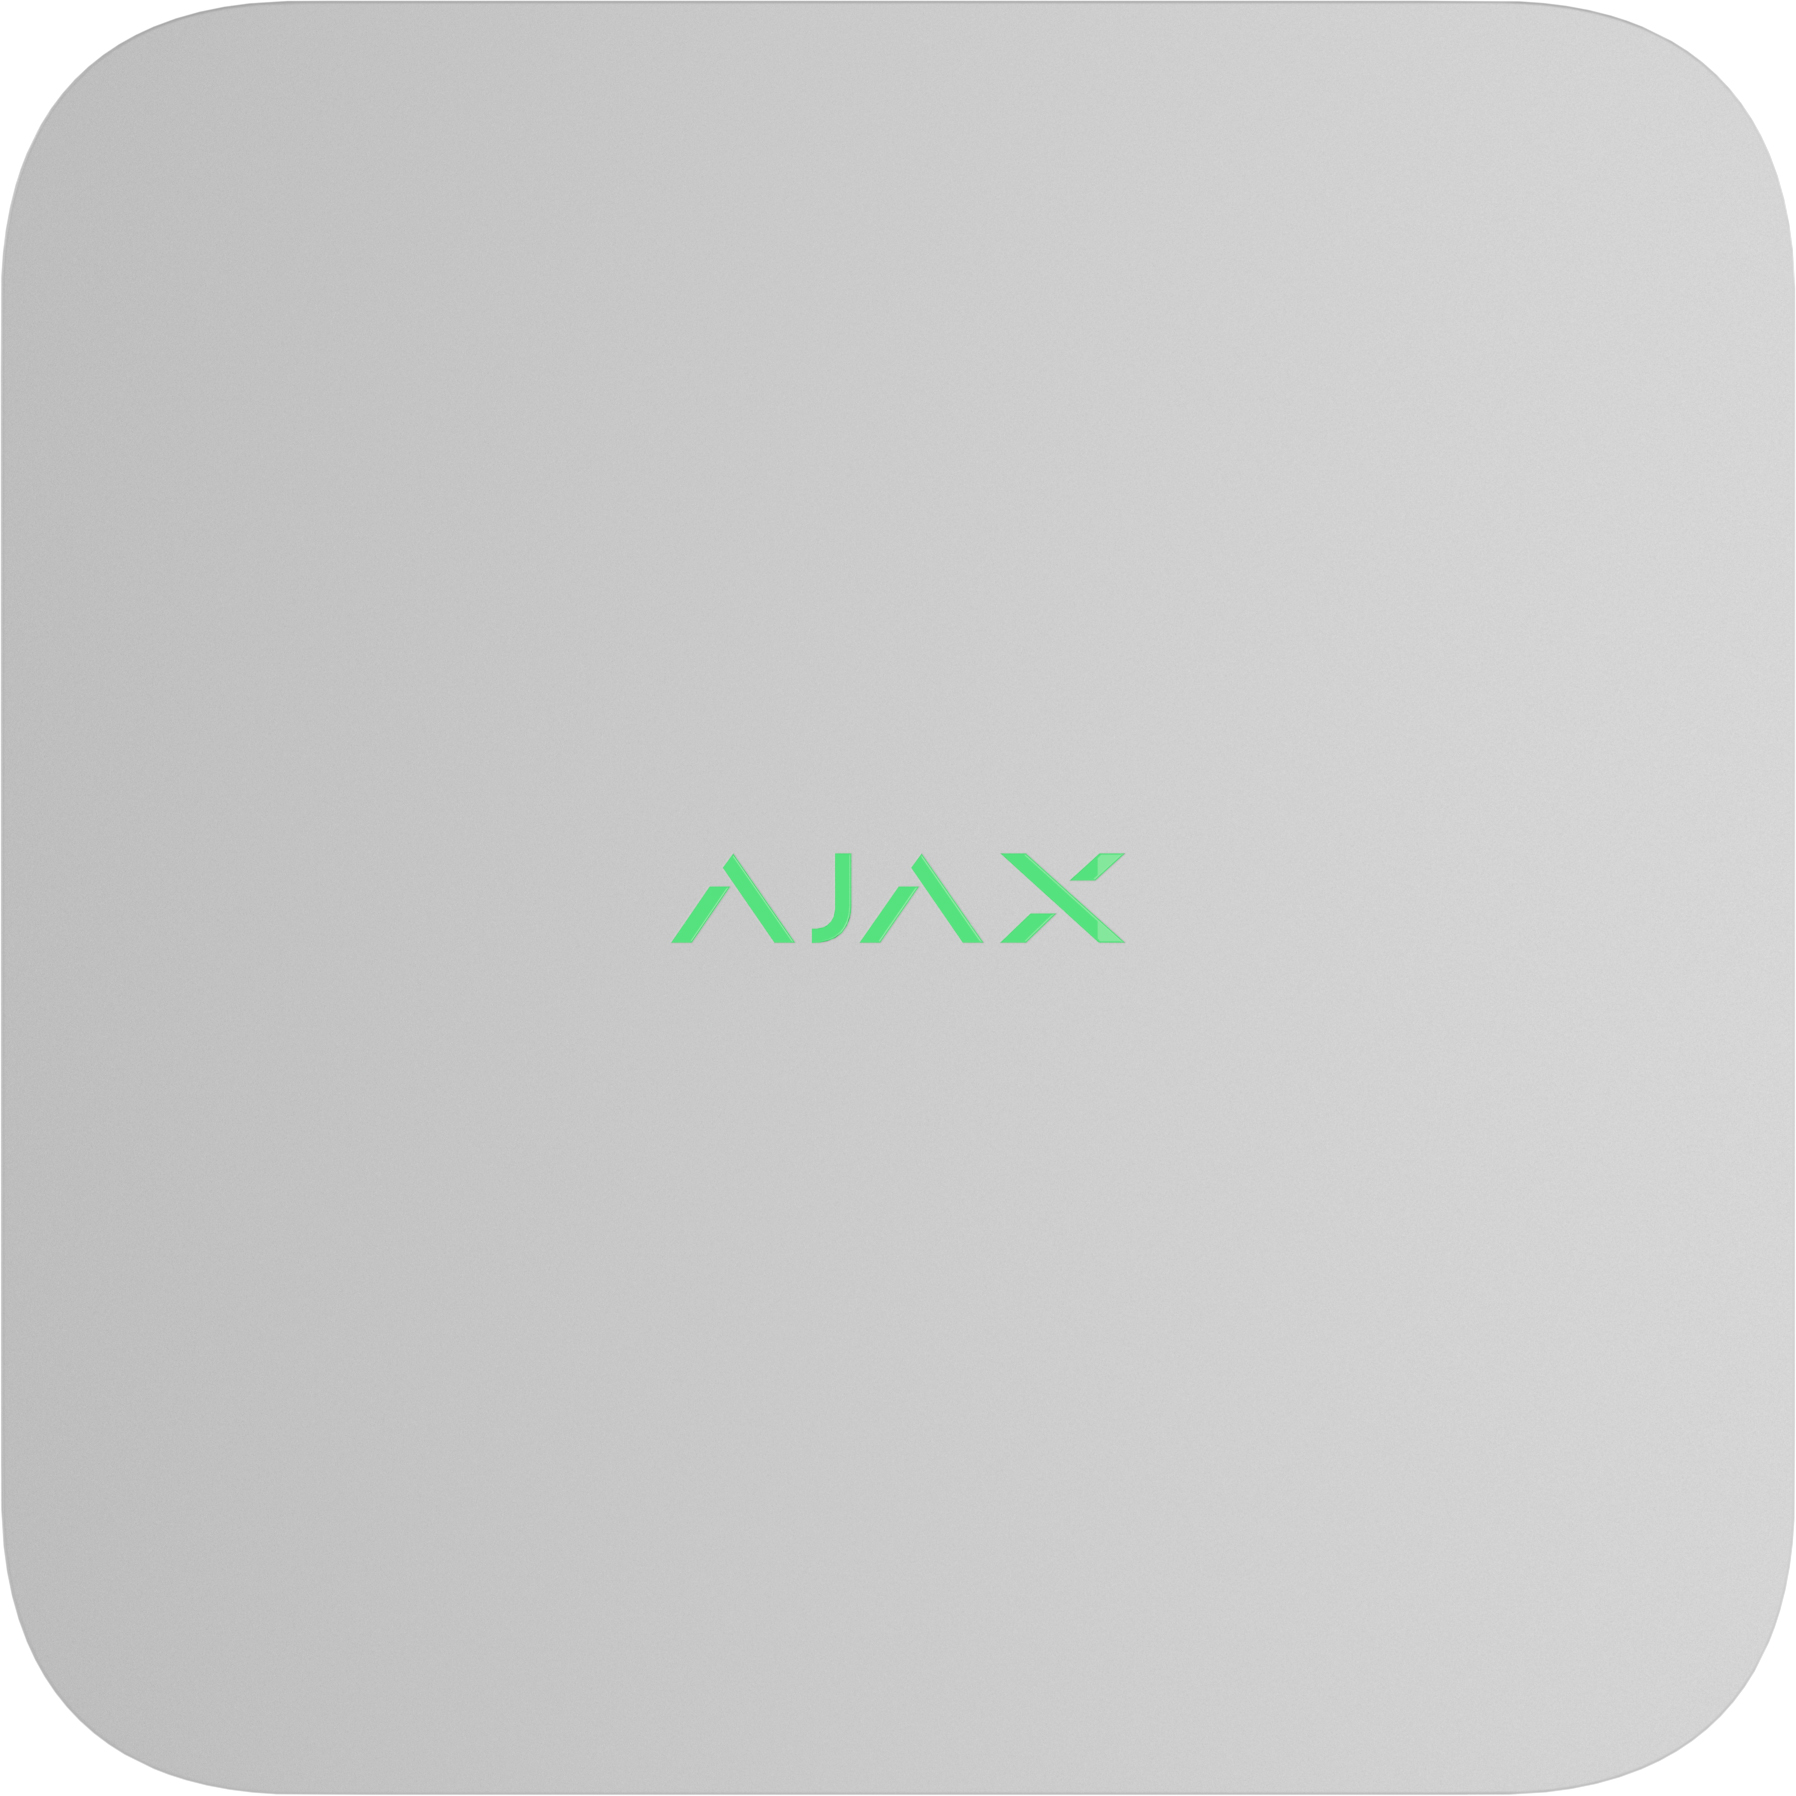 Мережевий відеореєстратор Ajax NVR, 16 каналів, jeweller, білий